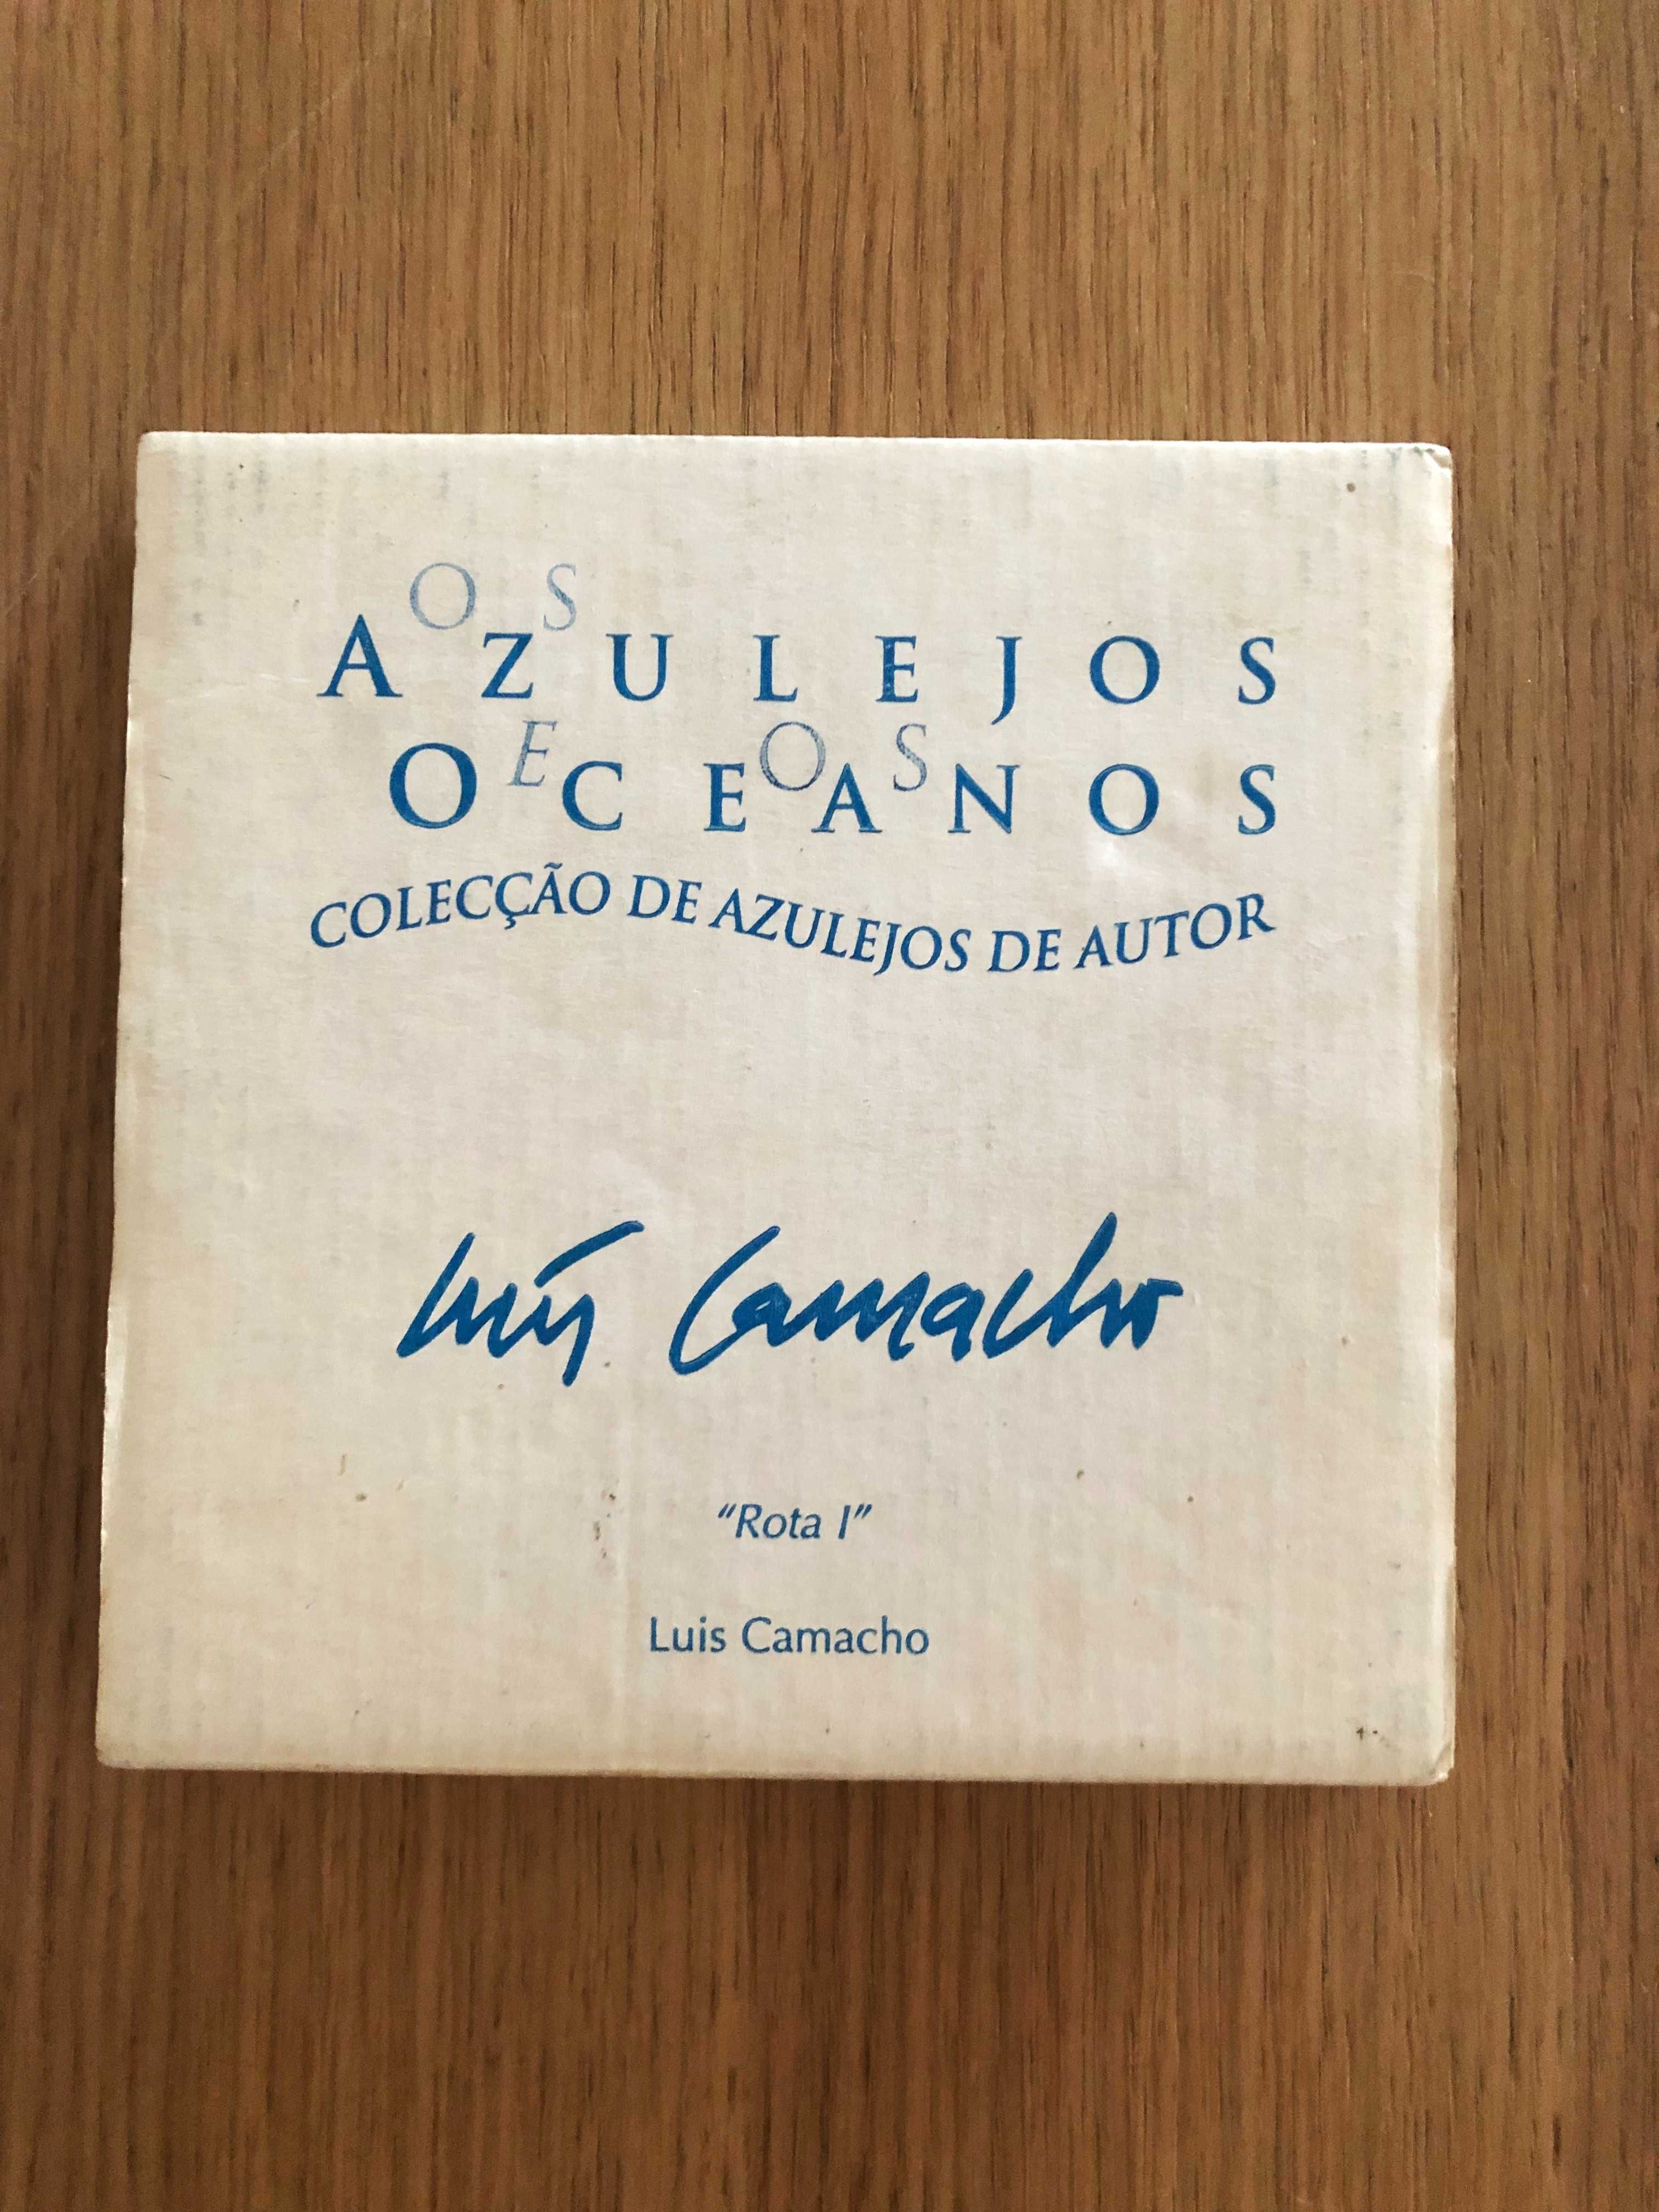 Azulejo Viúva Lamego Luis Camacho "Rota 1" com caixa original